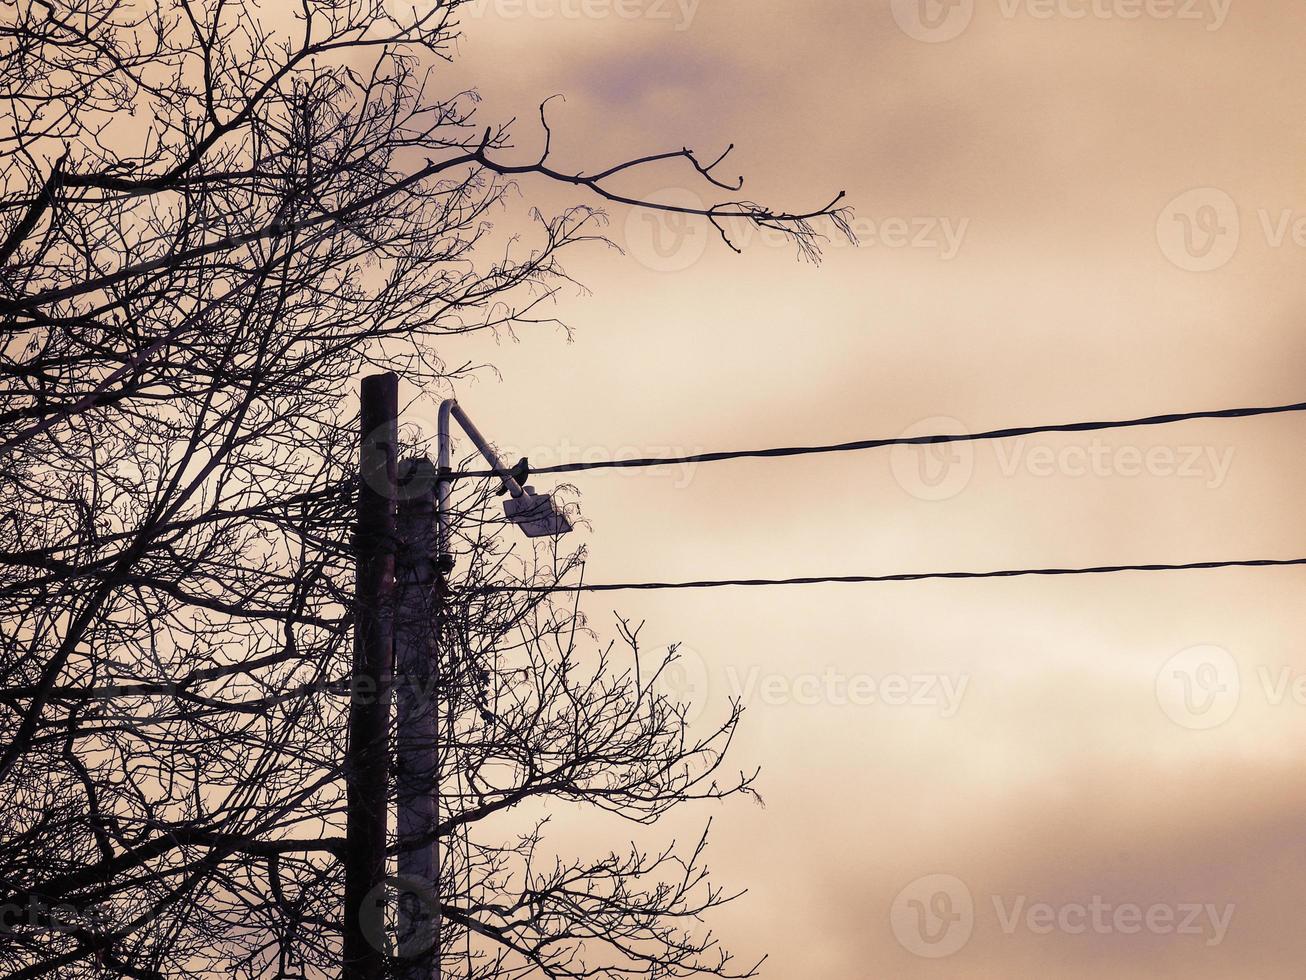 draden en straatlantaarn met zittende vogel en bladloze boomtakken op donkere hemelachtergrond sepia foto